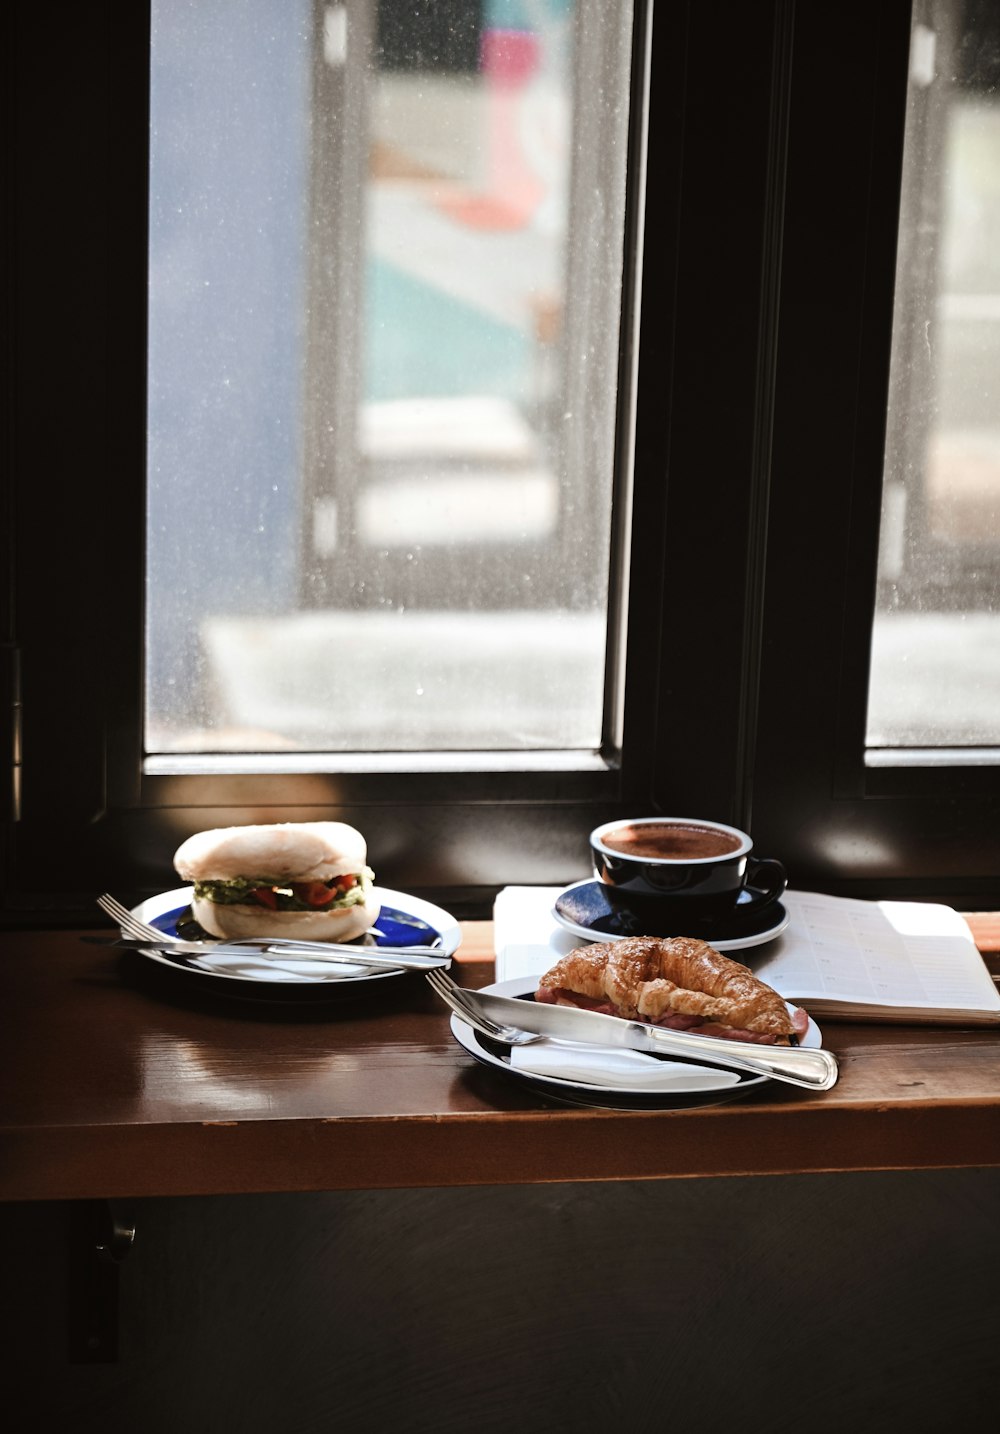 burger on white ceramic plate beside black ceramic mug on brown wooden table